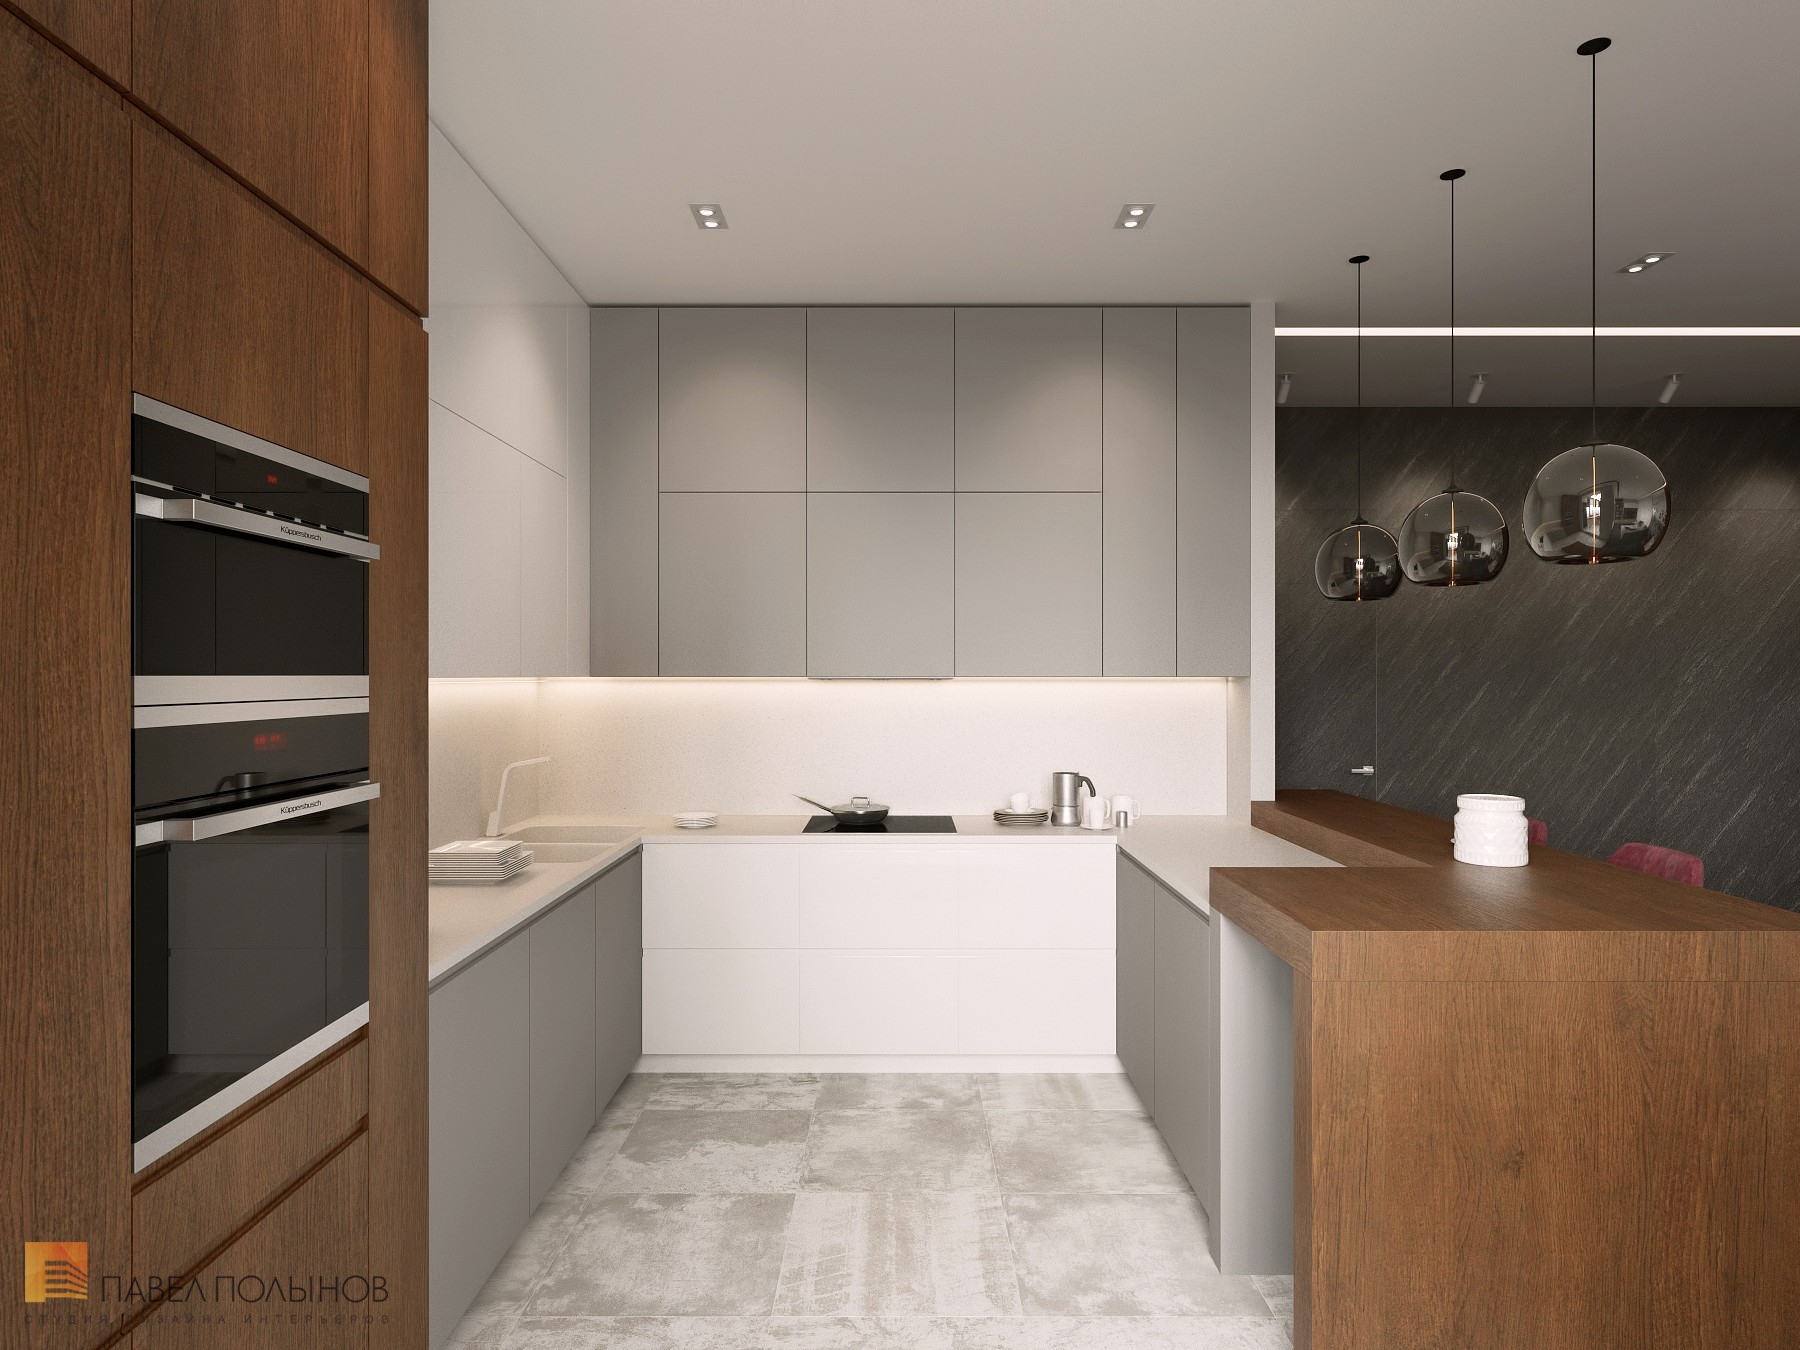 Фото дизайн кухни из проекта «Интерьер квартиры в ЖК Duderhof Club, современный стиль, 136 кв.м.»